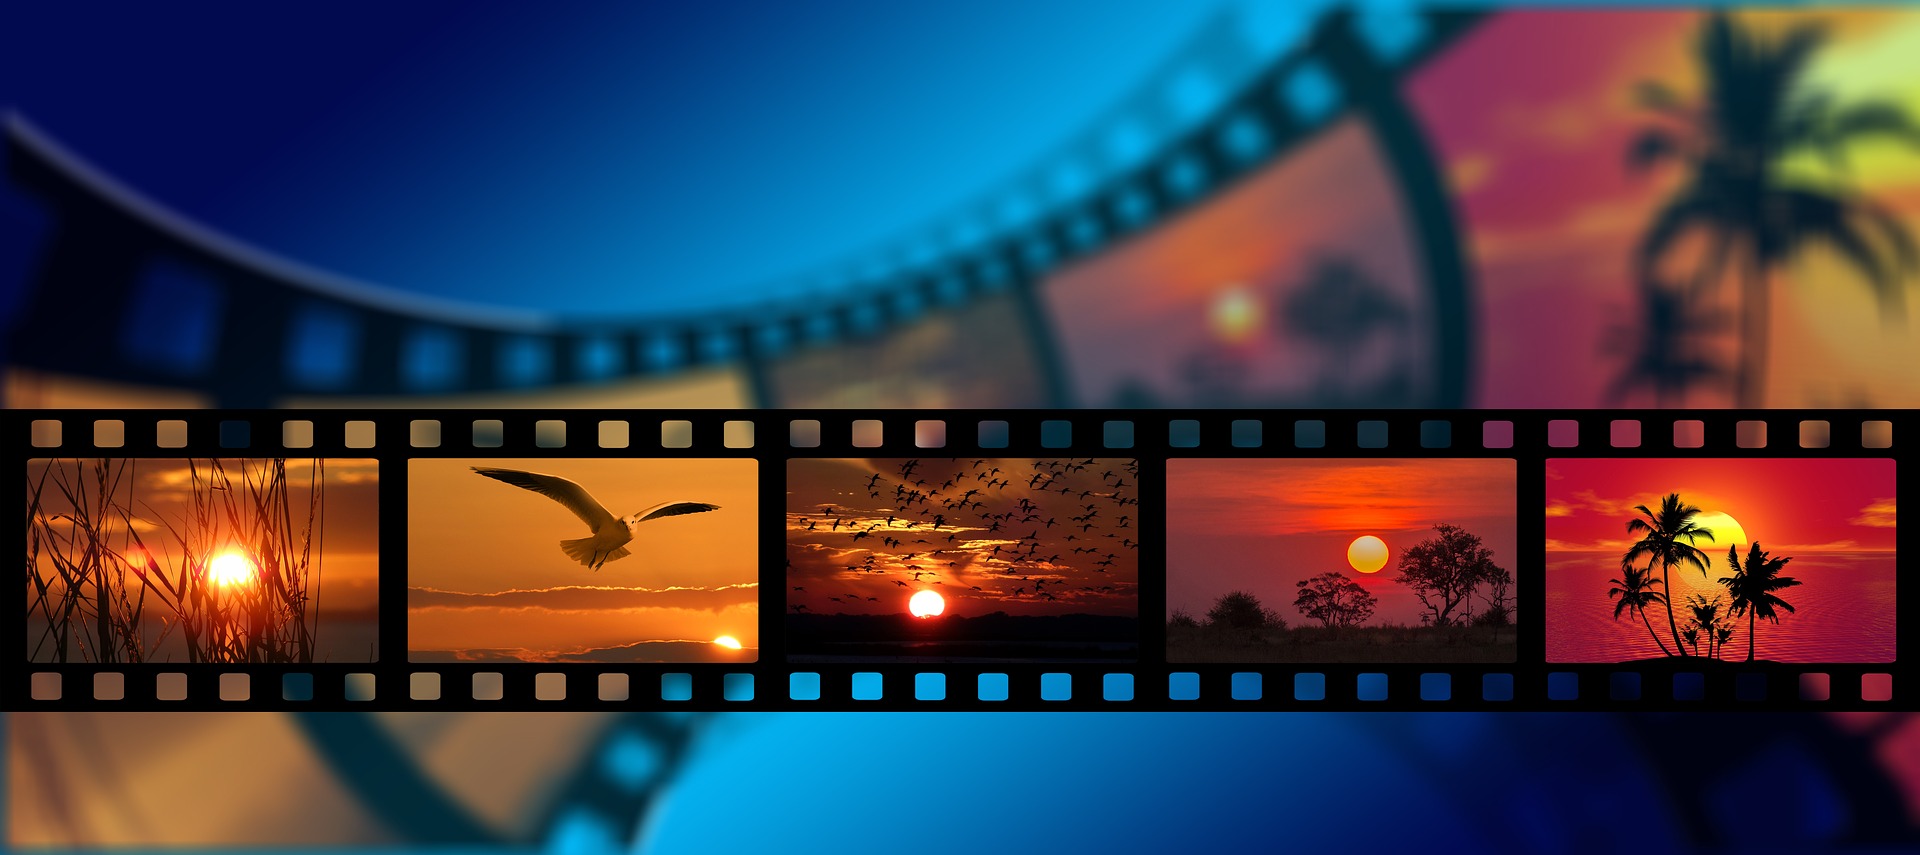 Eri väreissä oleva kuva, jossa elokuvafilmiä. Ruuduissa on luentoaiheita, lintu, meriaiheita, kasveja. Silminauha menee yhtäjaksoisesti kuvan vasemmasta oikeaan laitaan.